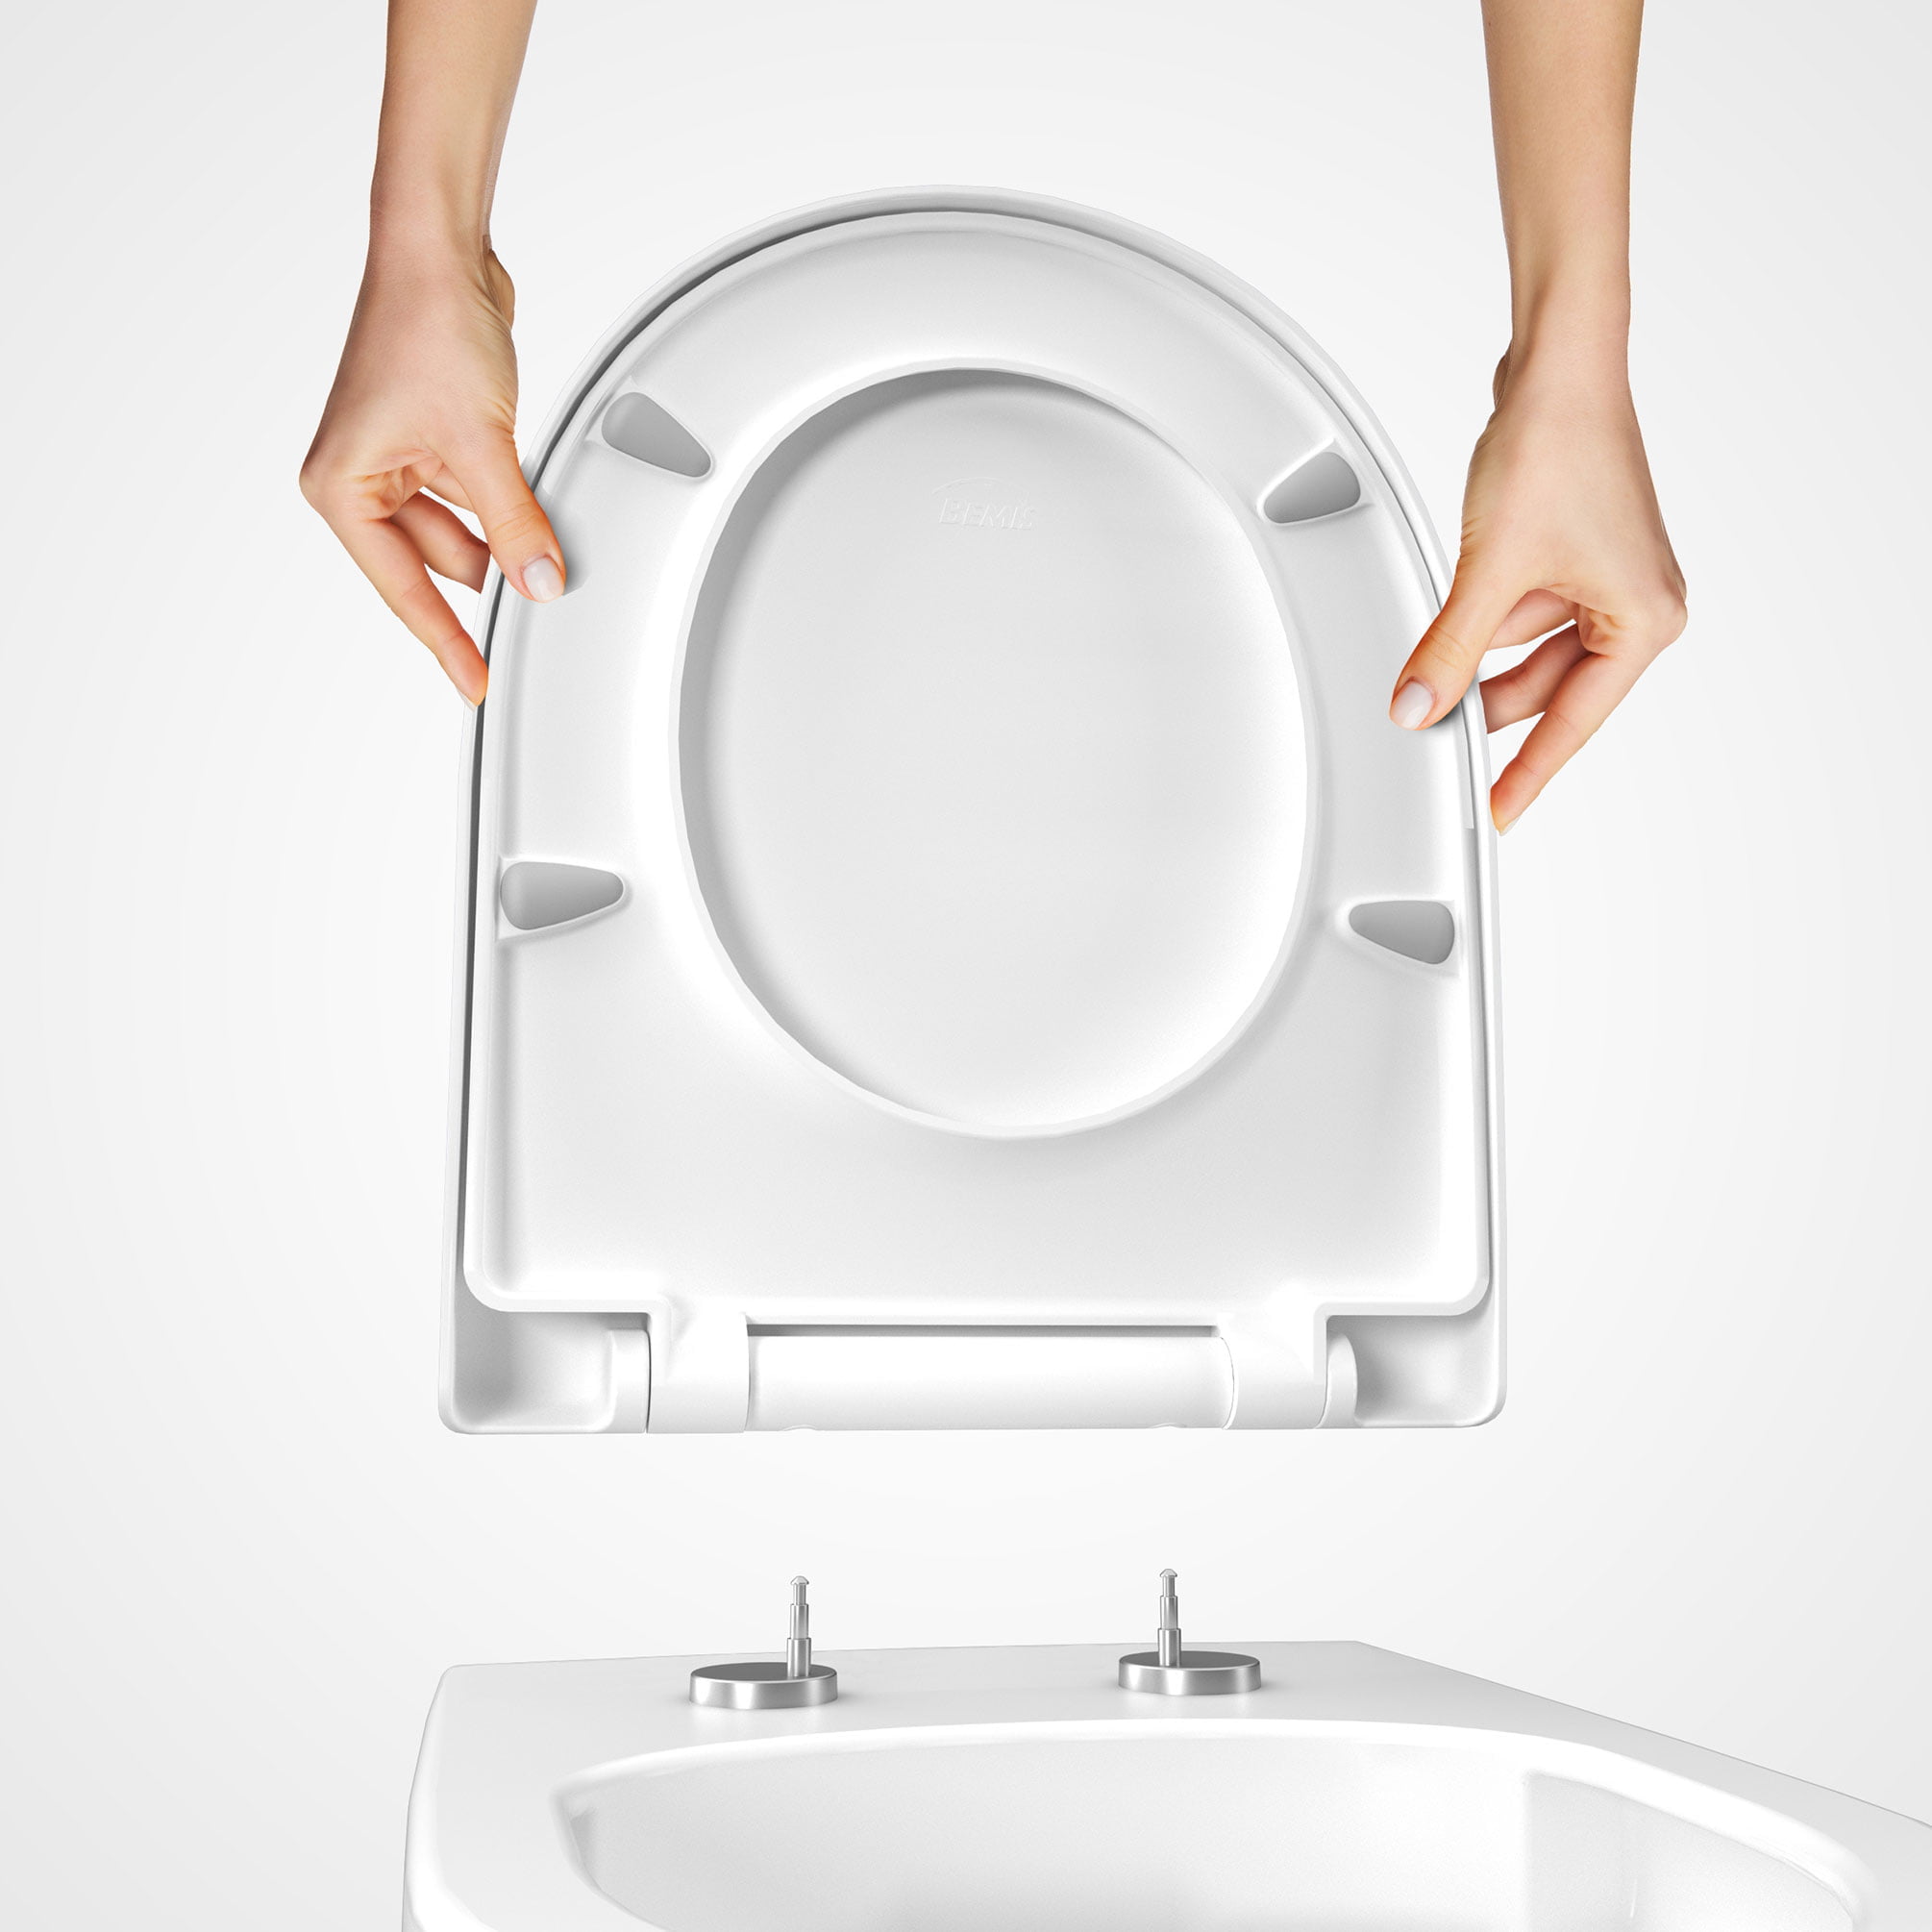 renderiranje bemis wc sjedala designer2 dizajn ambalaze packaging design 1